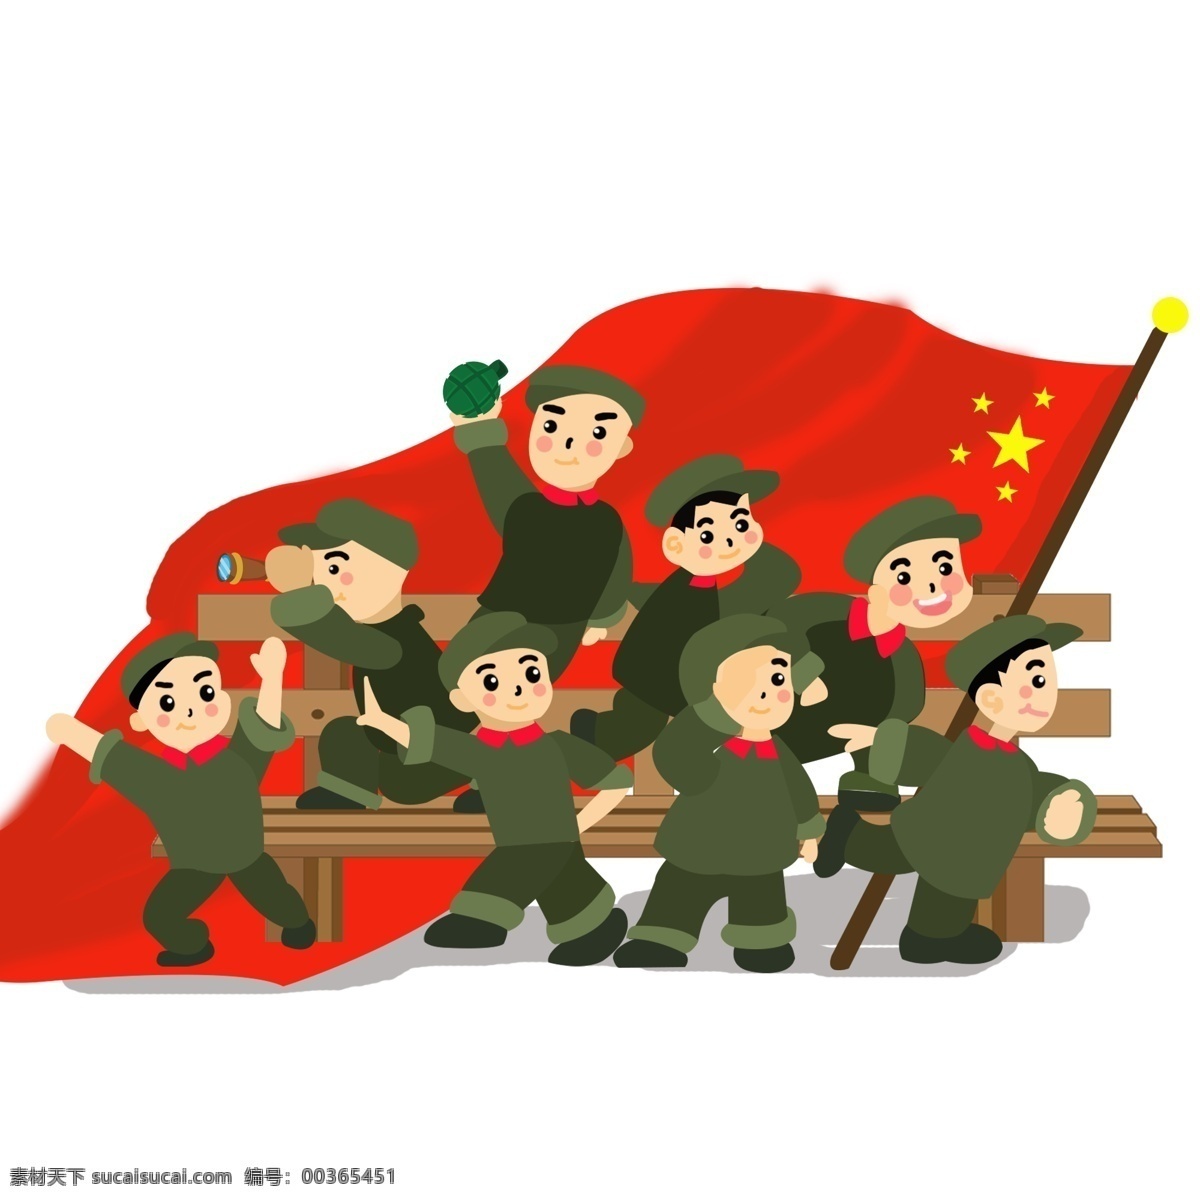 原创 建军节 创意 手绘建军节 中国军人 革命军人 打仗军人 手绘军人形象 卡通 手绘 节日 矢量红军 当兵的人 原创军人